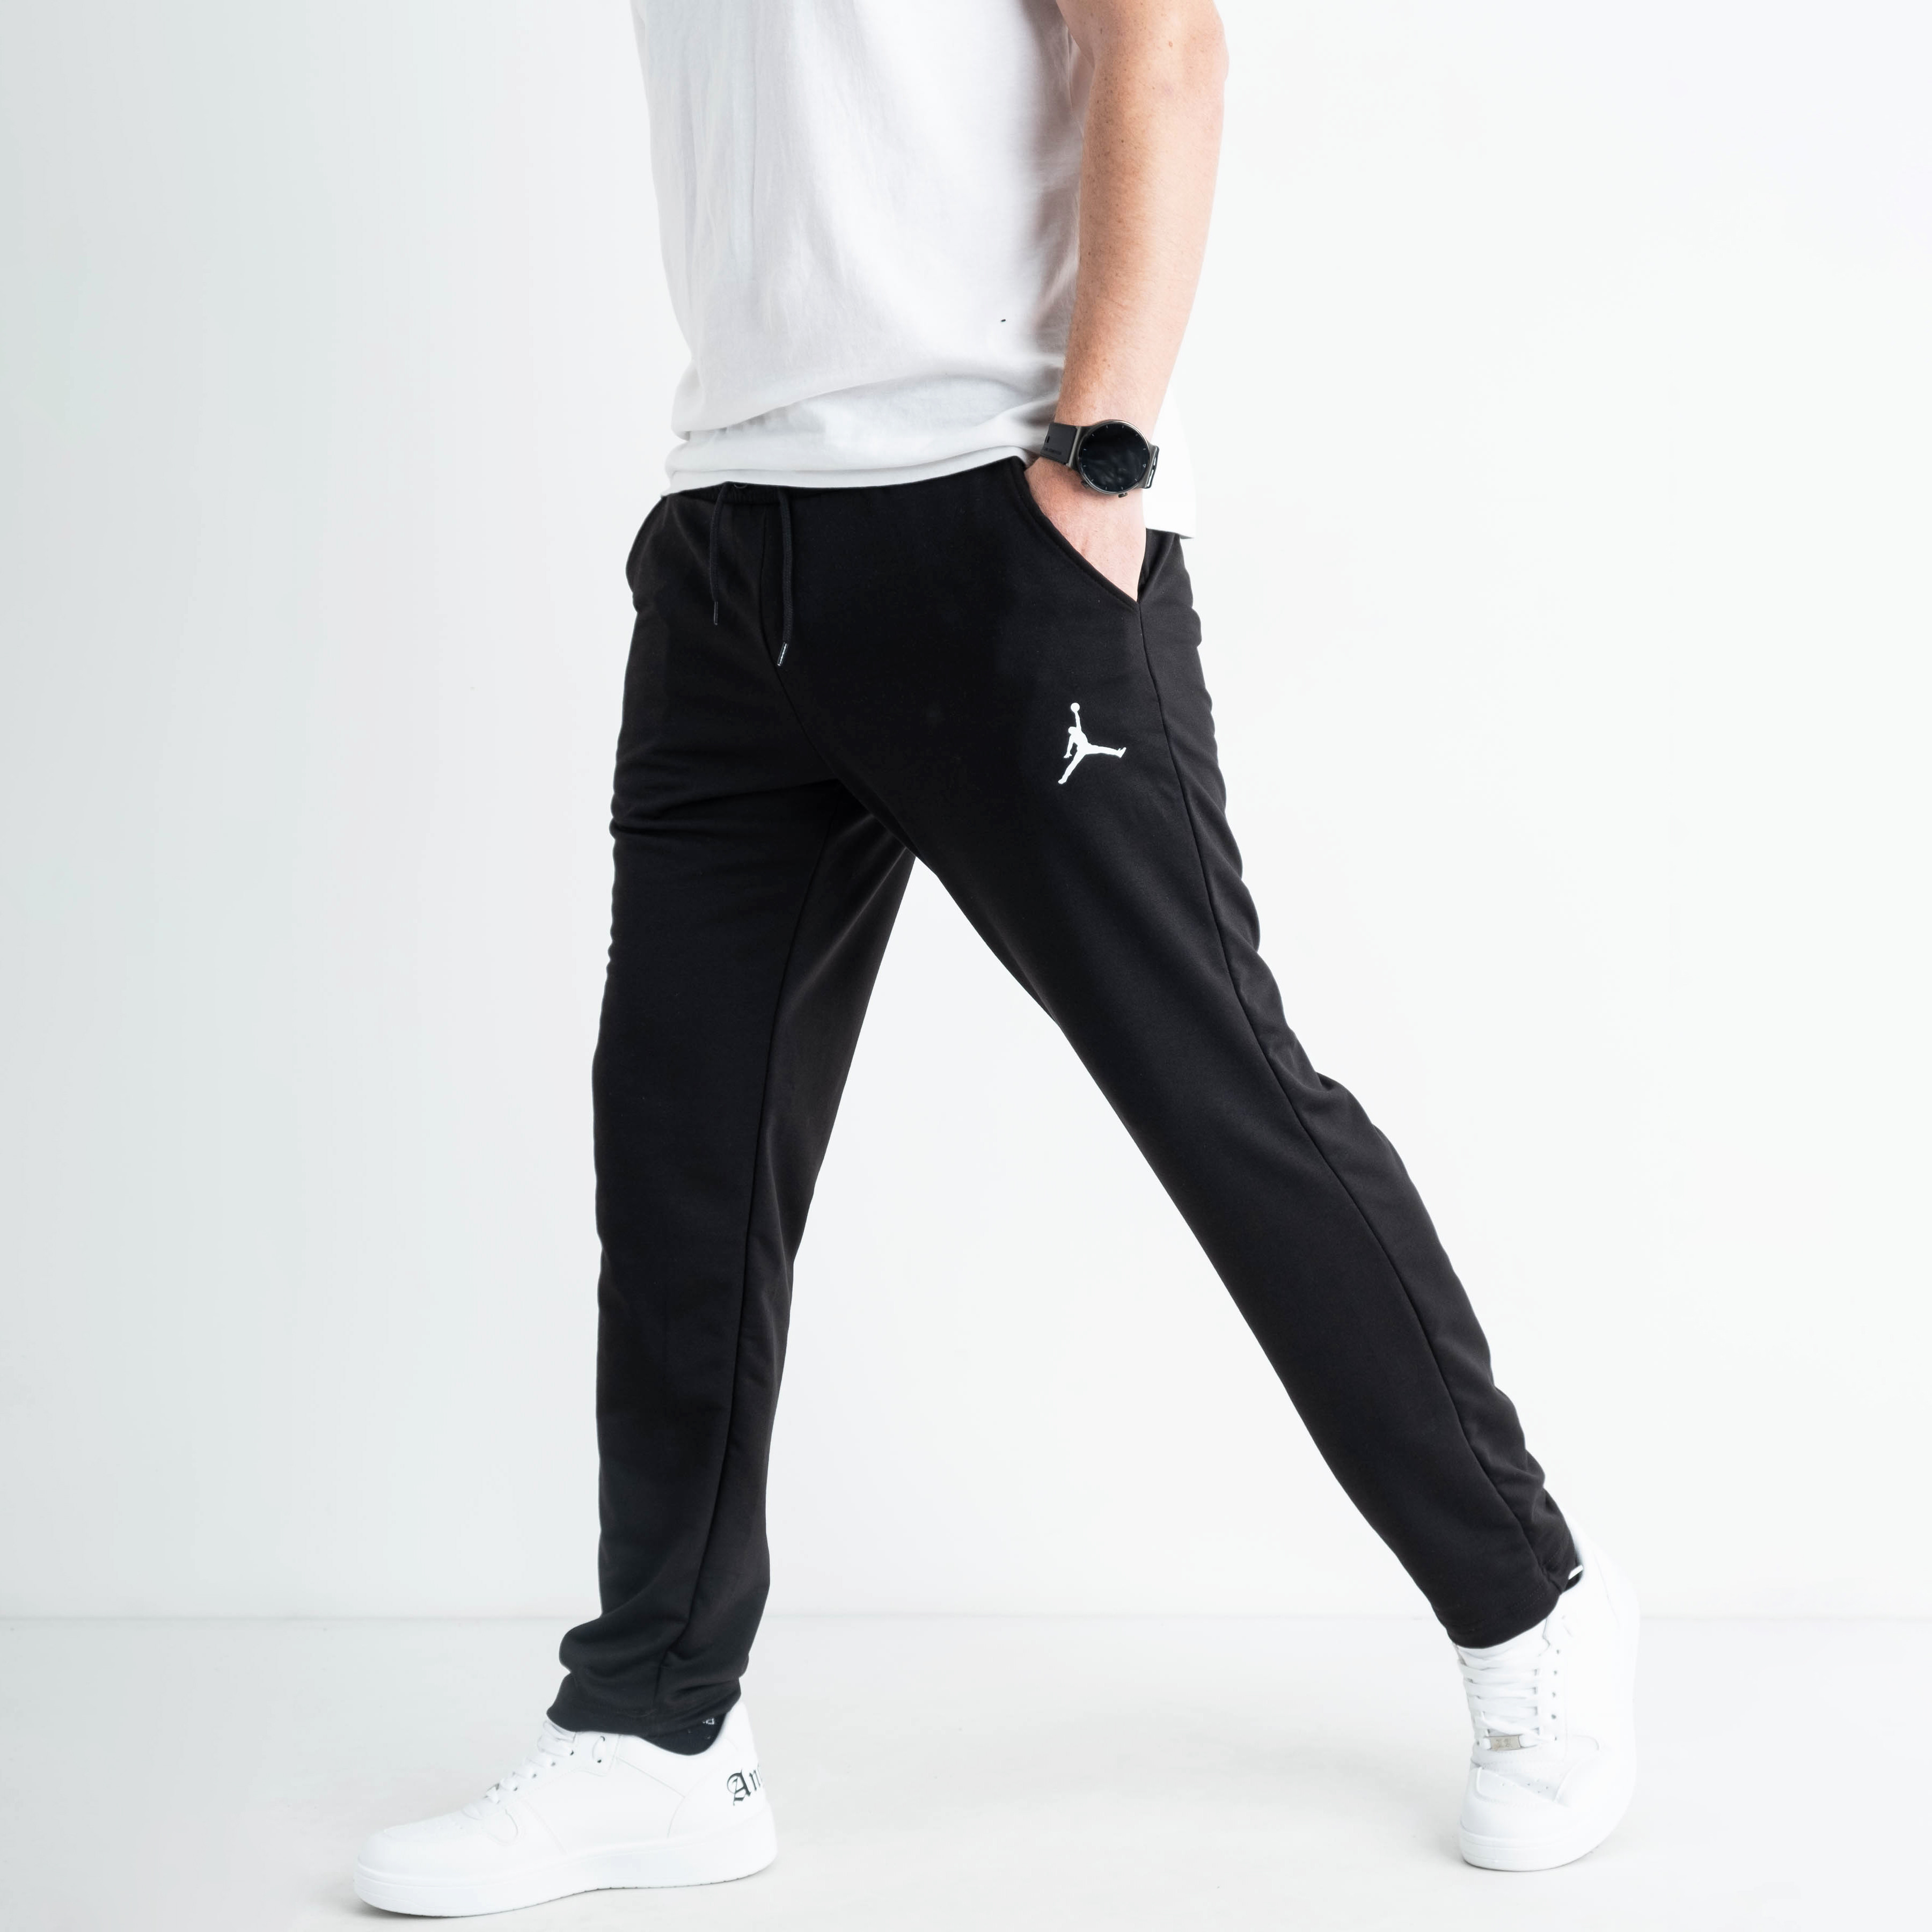 1672-1 ЧЕРНЫЕ Yola спортивные штаны мужские из двунитки ( 4 ед. размеры: M.L.XL.XXL)